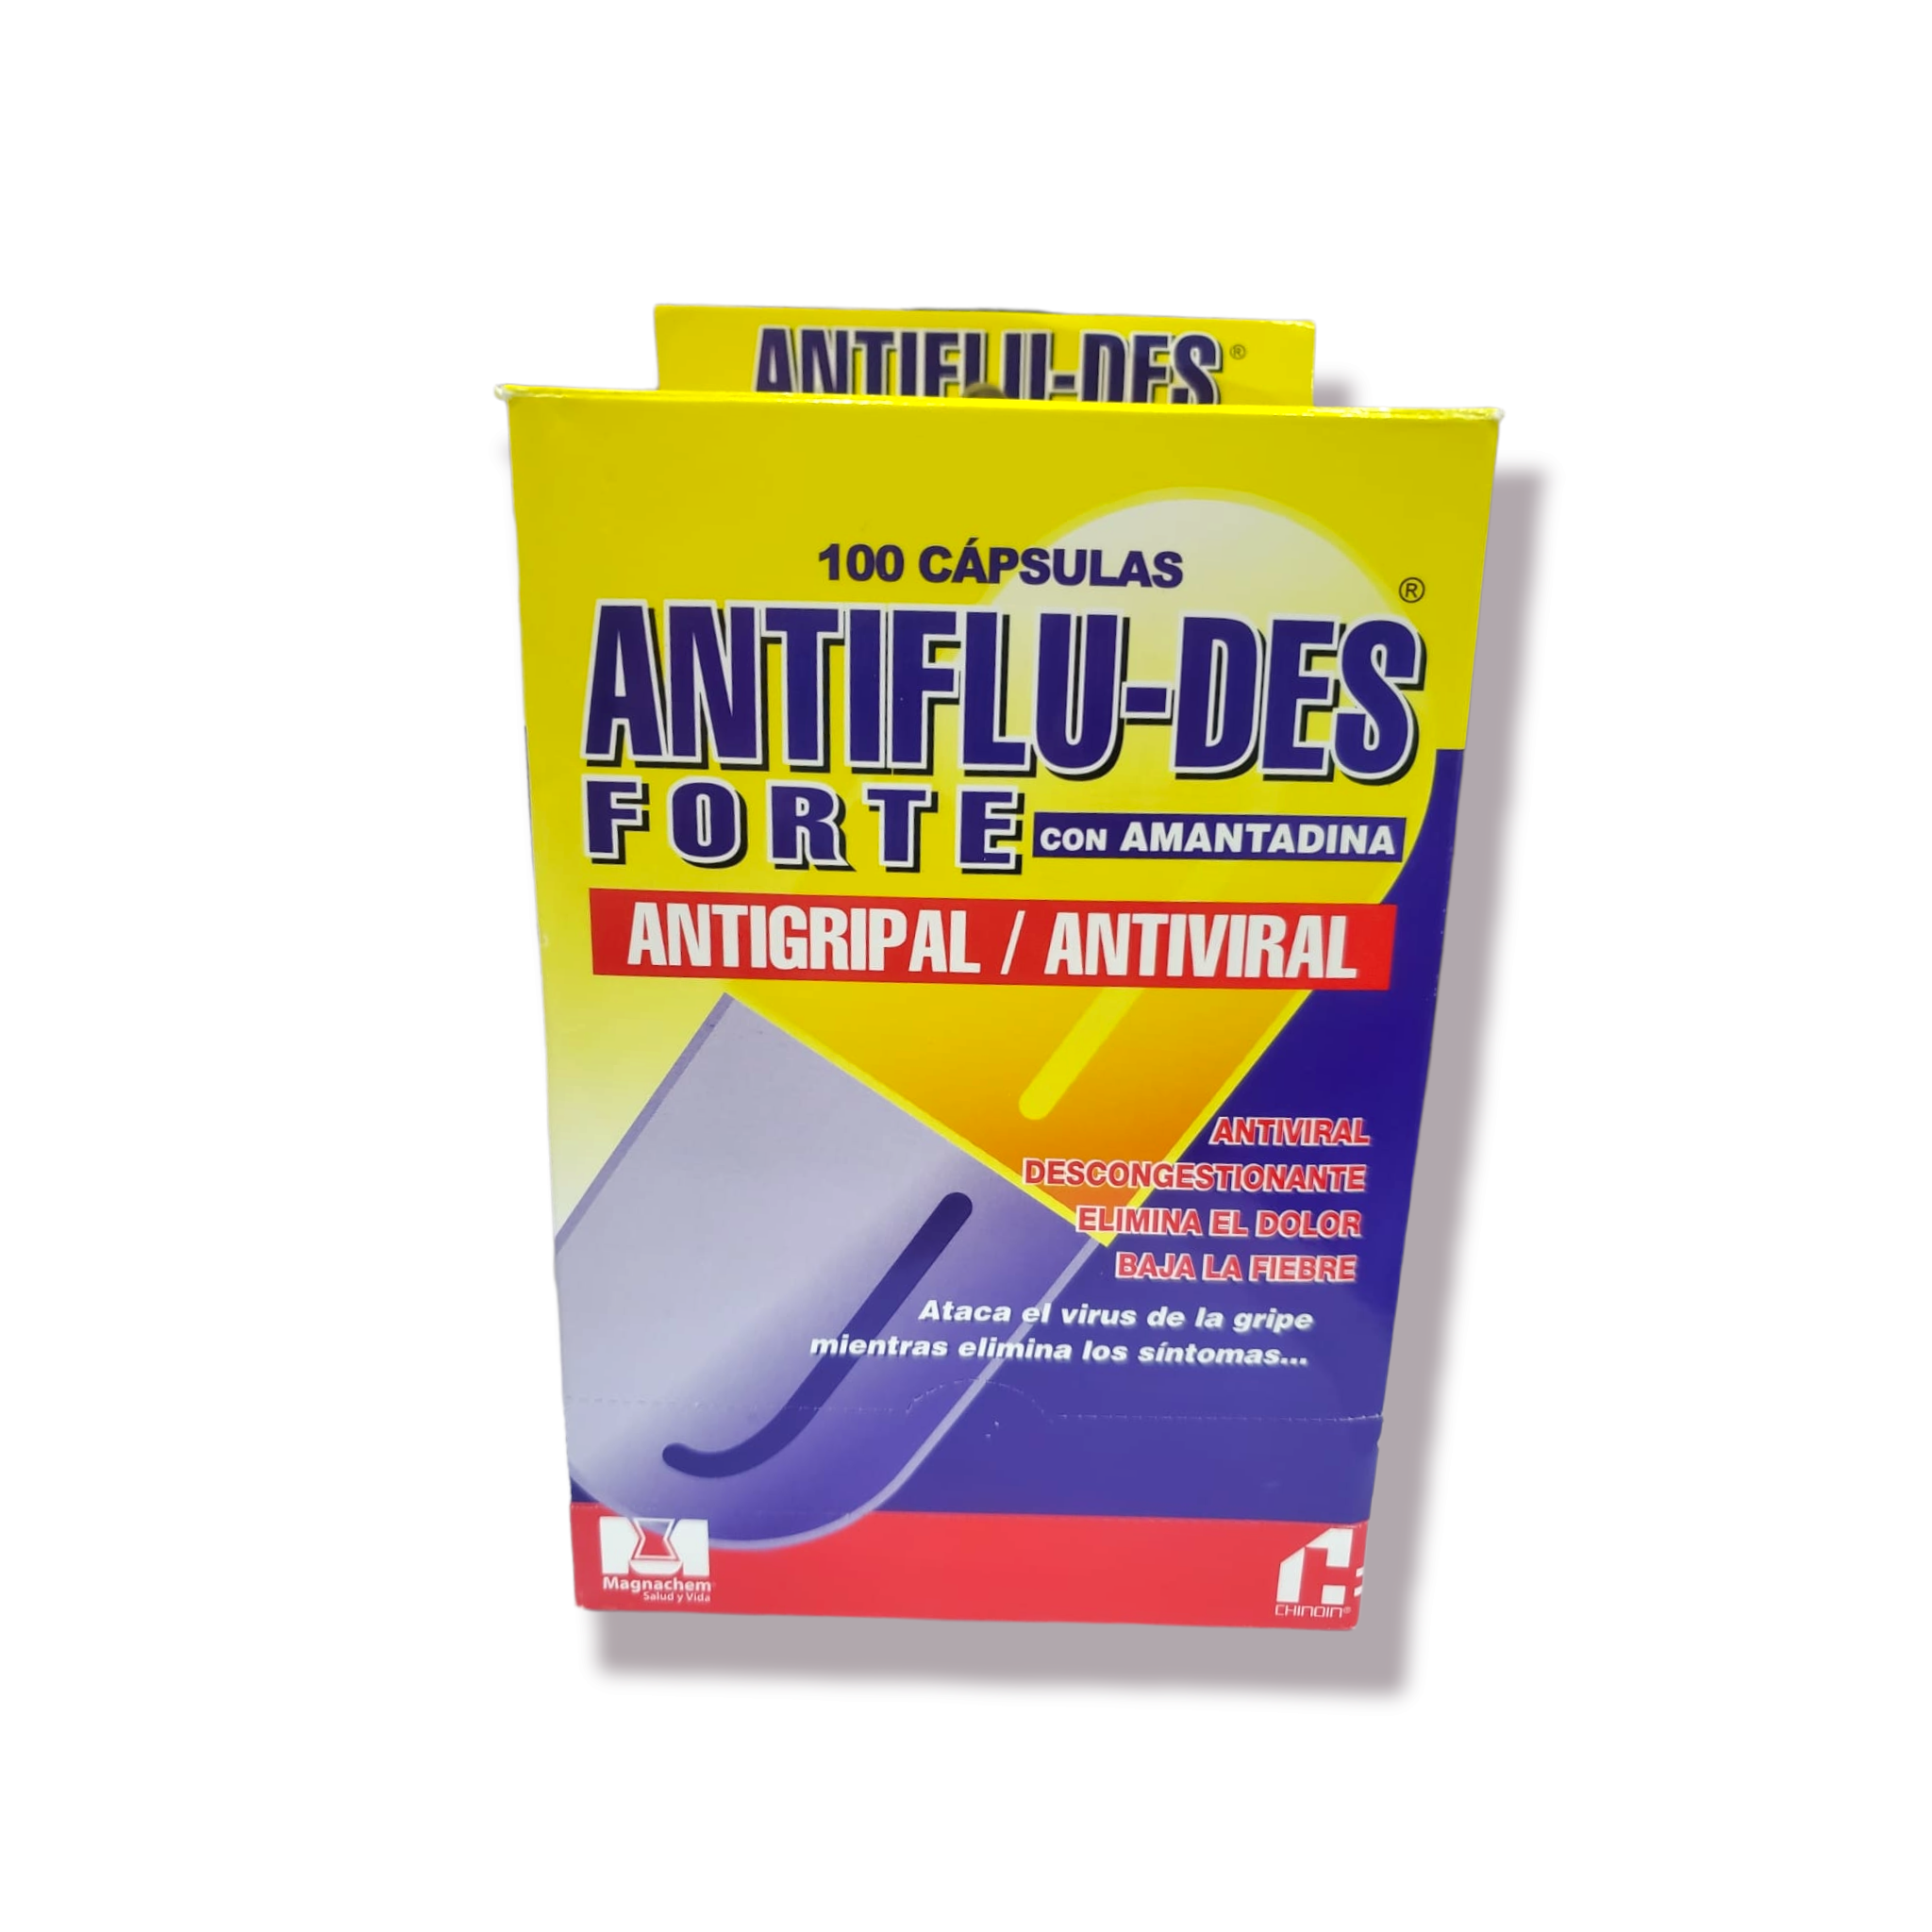 Antiflu-des Forte Antigripal/Antiviral